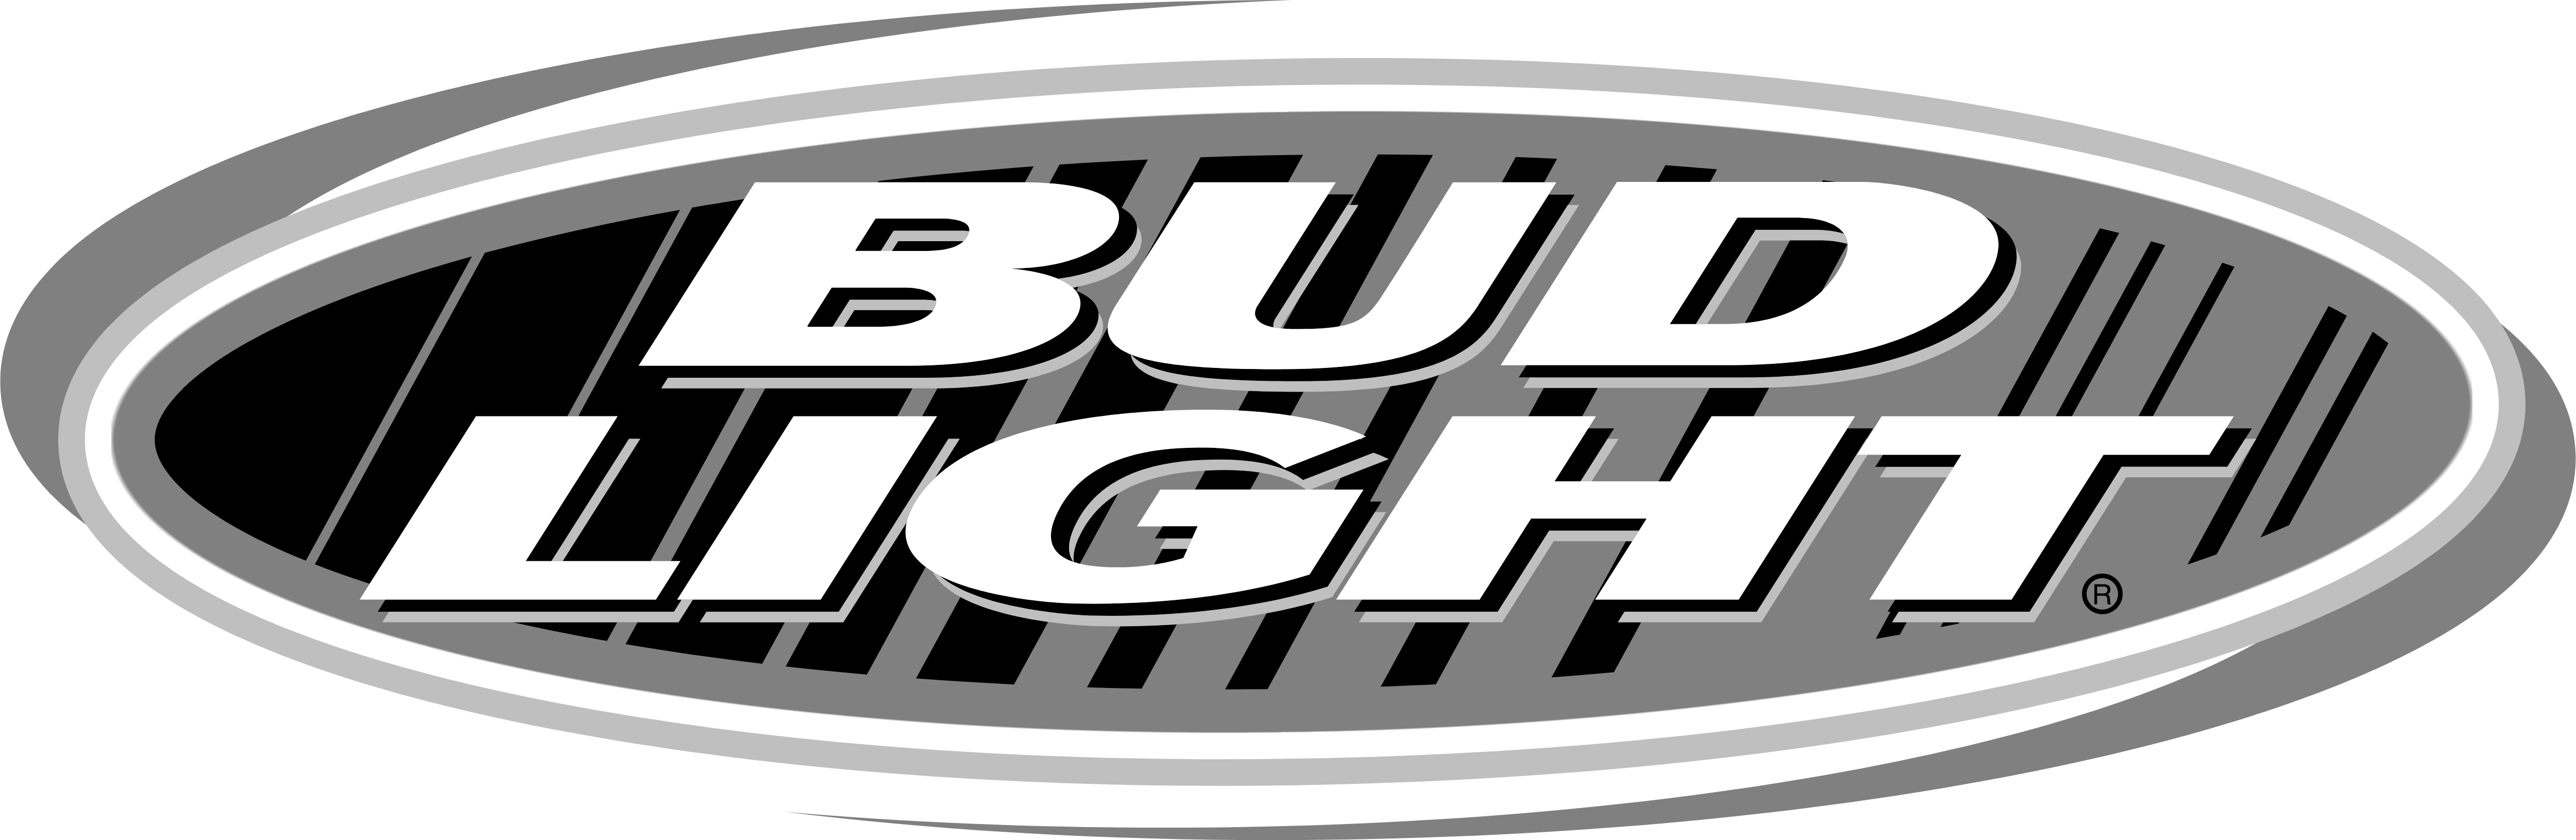 Defekt uddøde Hukommelse Bud Light – Logos Download